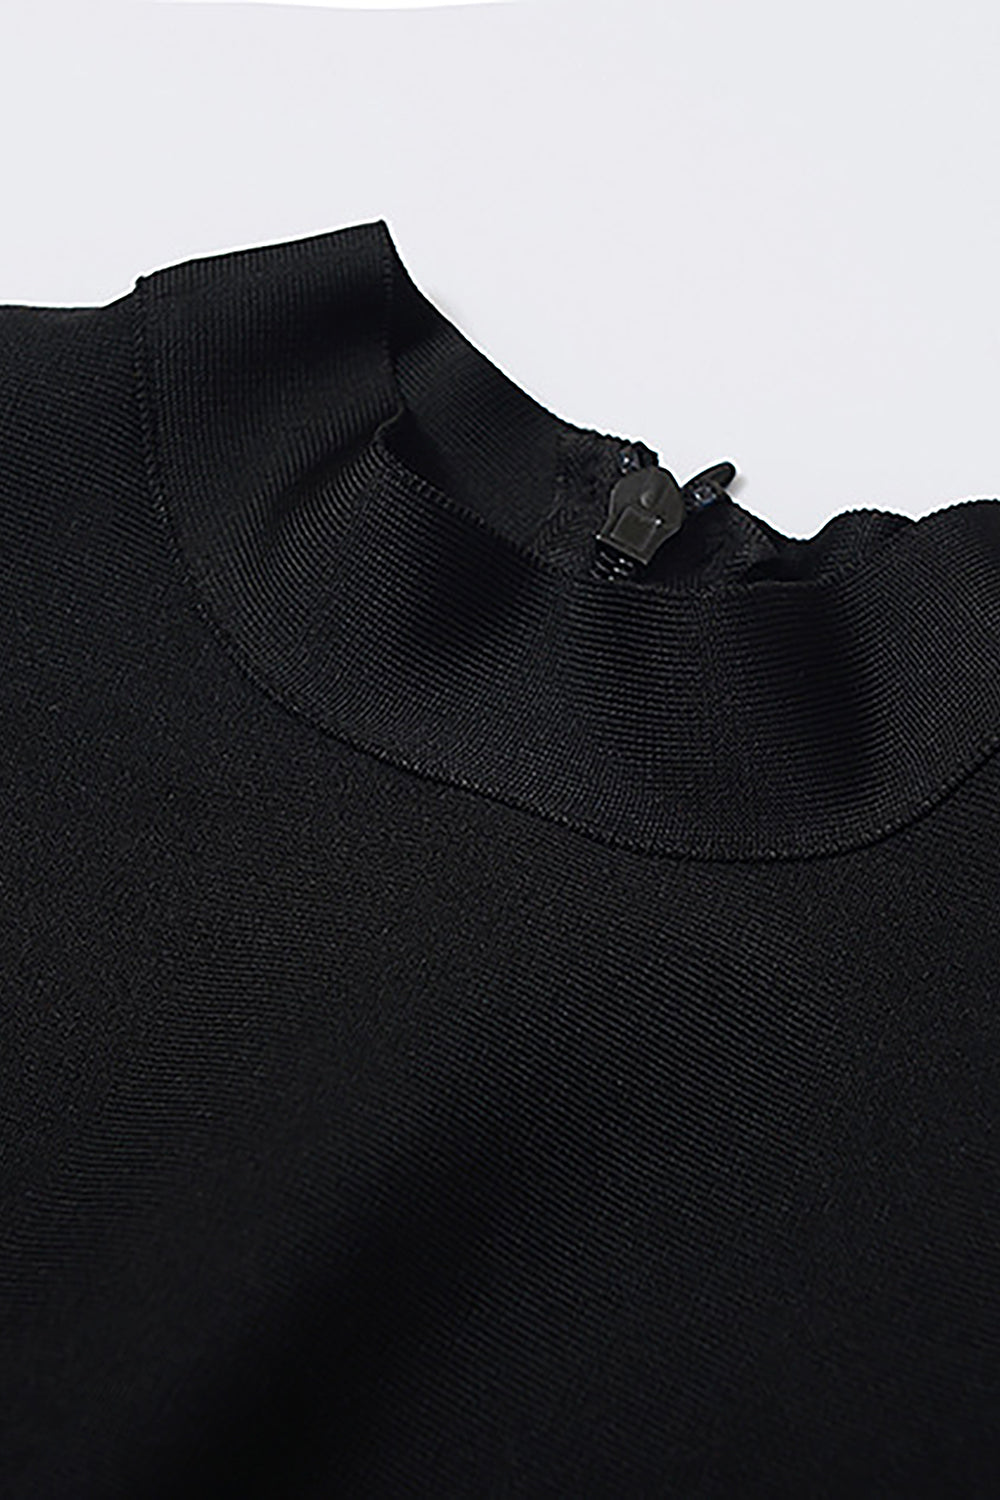 Vestido preto sem mangas com faixas divididas em penas midi